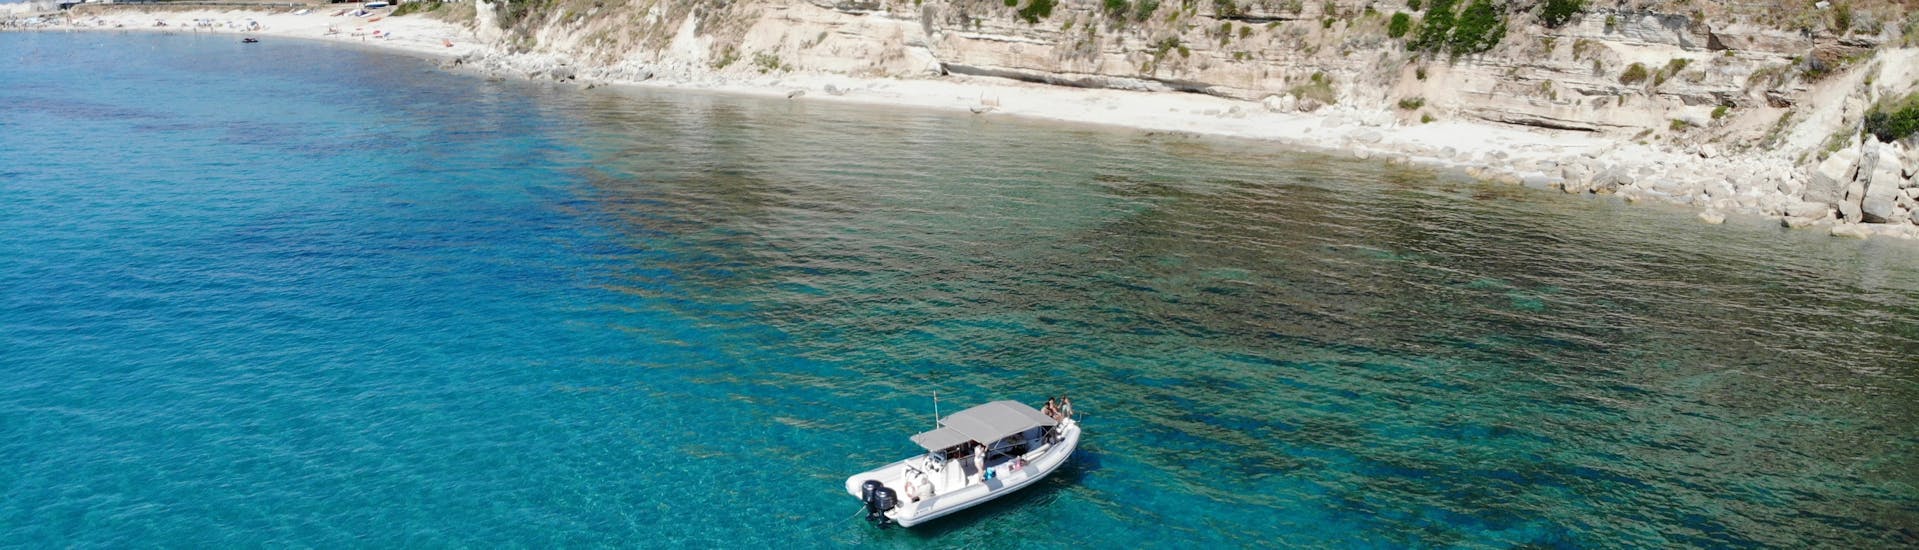 Boot von TropeaSub von oben gesehen während der Privaten RIB-Bootstour von Tropea nach Sant'Irene mit Schnorcheln.